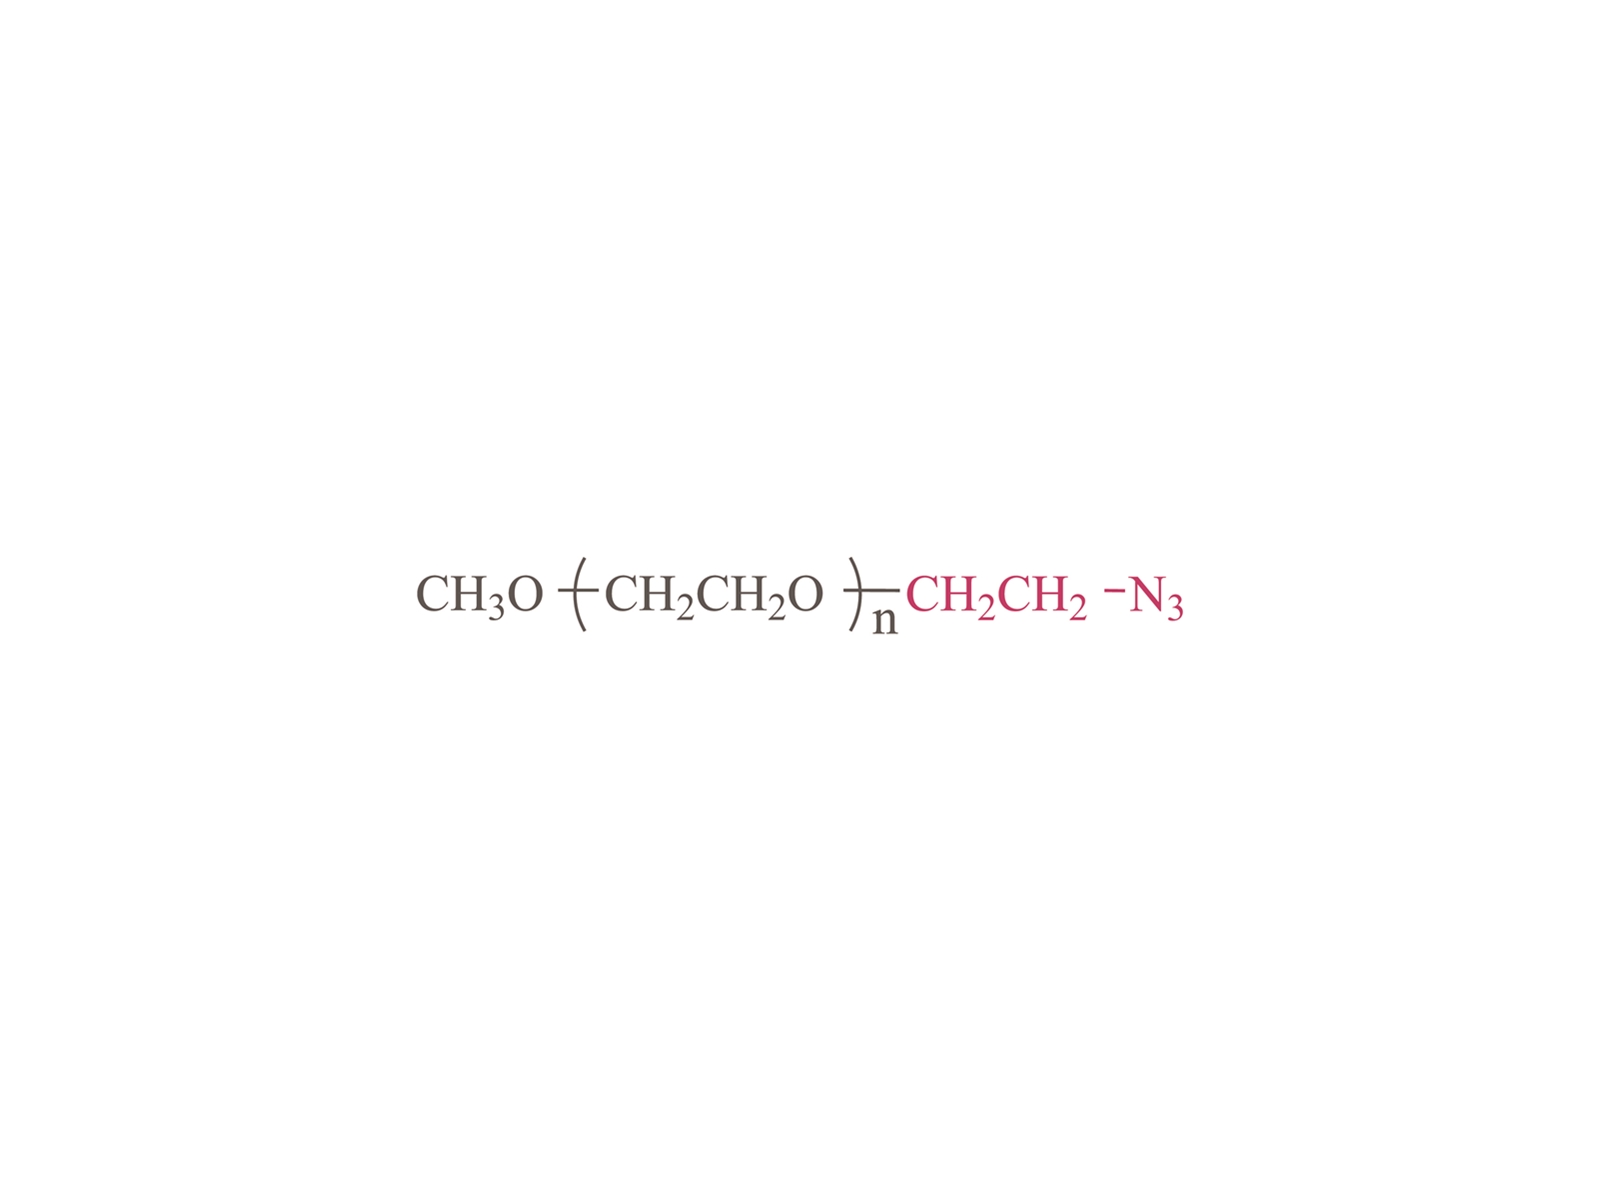 Methoxypholy (ethylene glycol) Azide [MPEG-N3] CAS: 89485-61-0,74654-06-1,606130-90-9,1043884-49-6,869718-80-9,89485-61-0